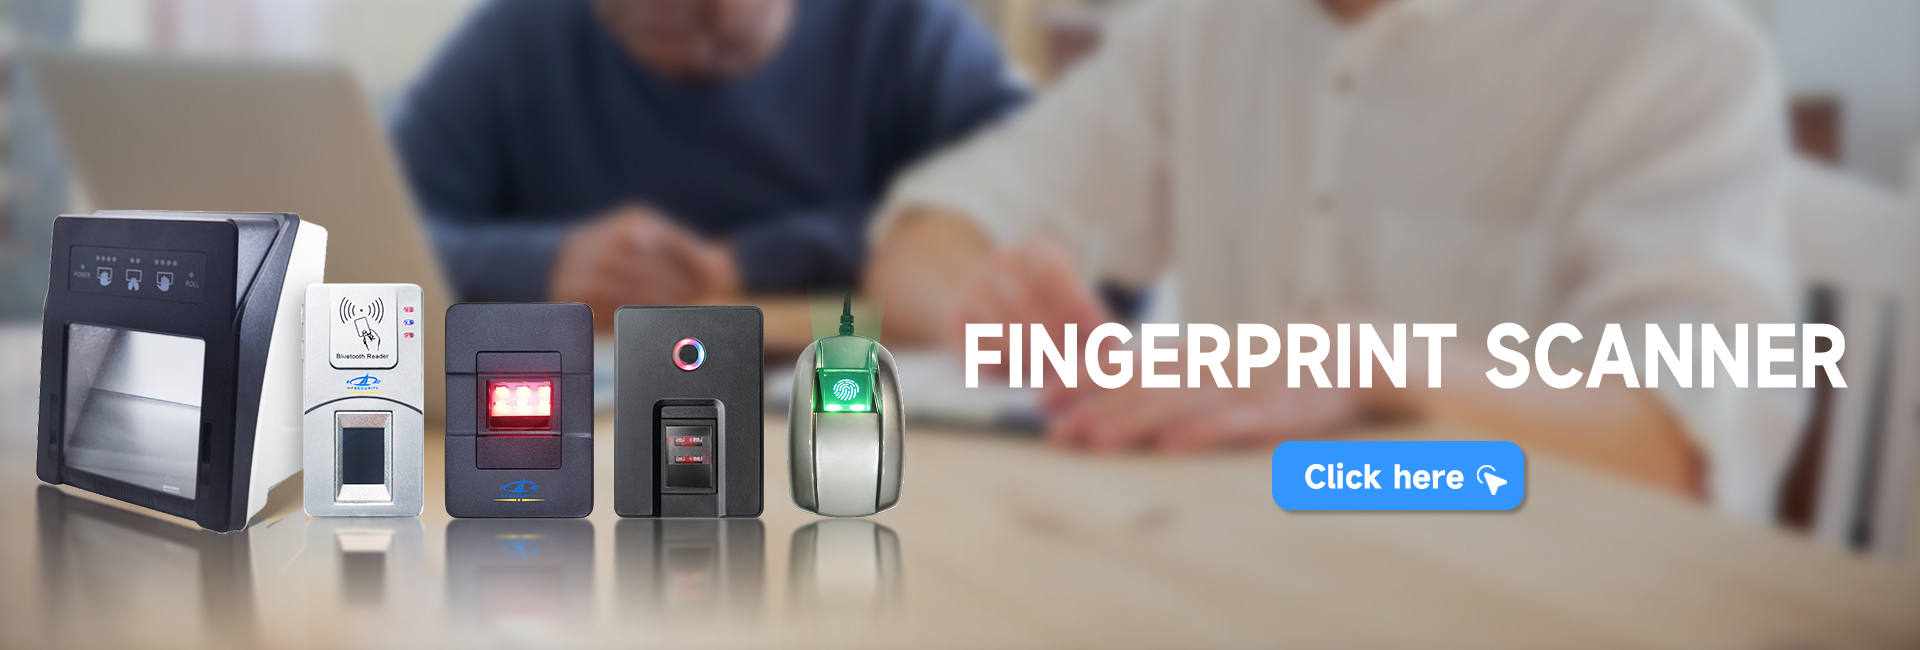 HFSECURITY biometric fingerprint scanner solution provider